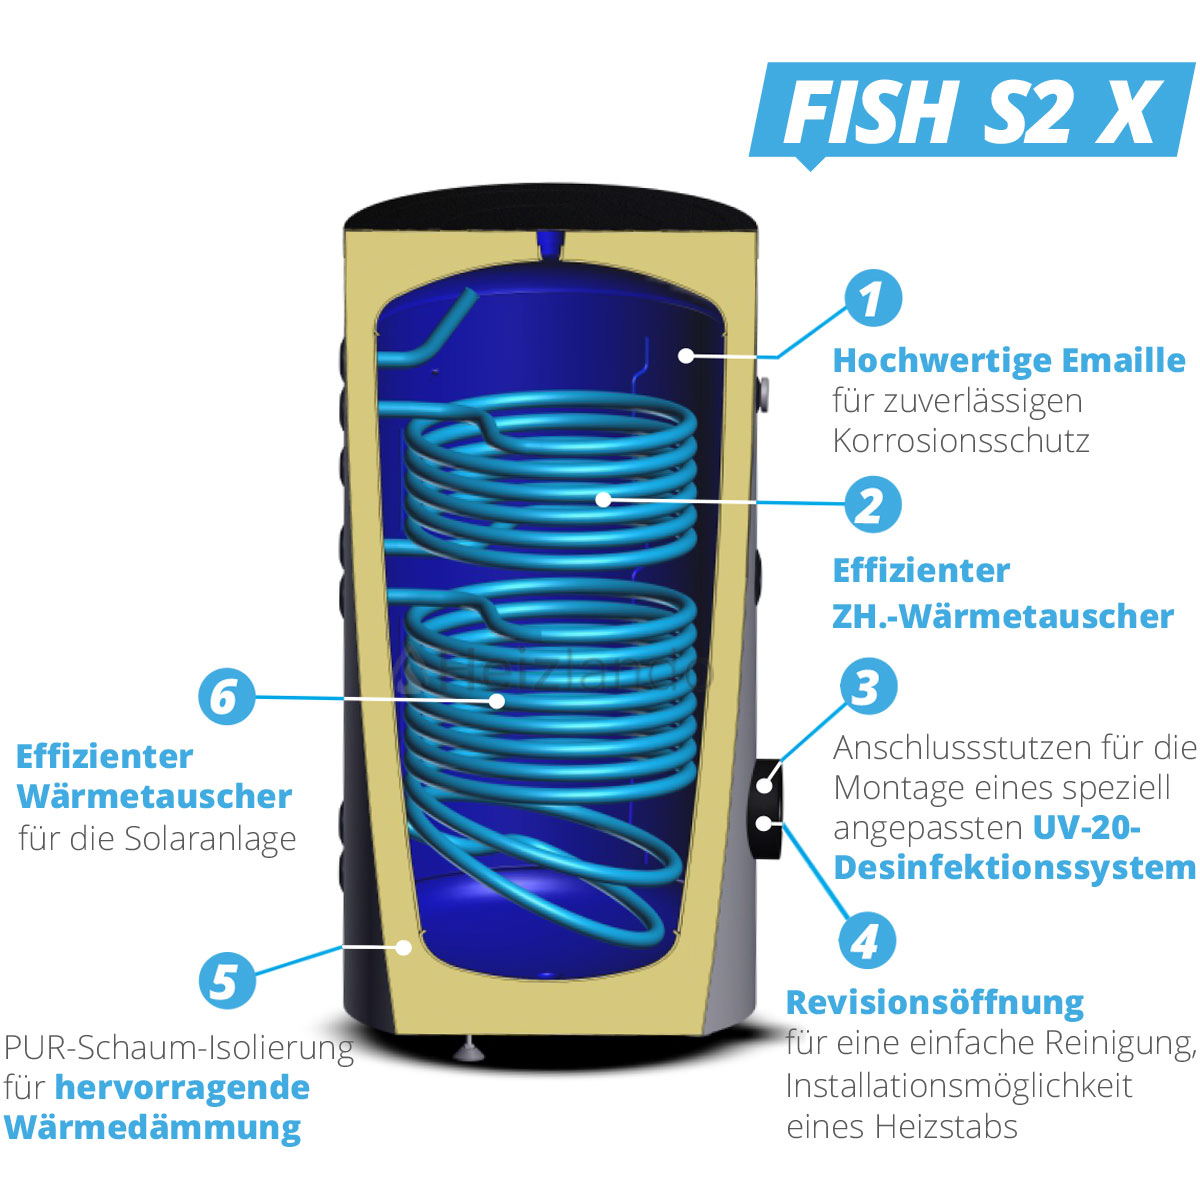 Sunex Warmwasser- und Solarspeicher Fish S2 mit 2 Wärmetauschern 200 Liter